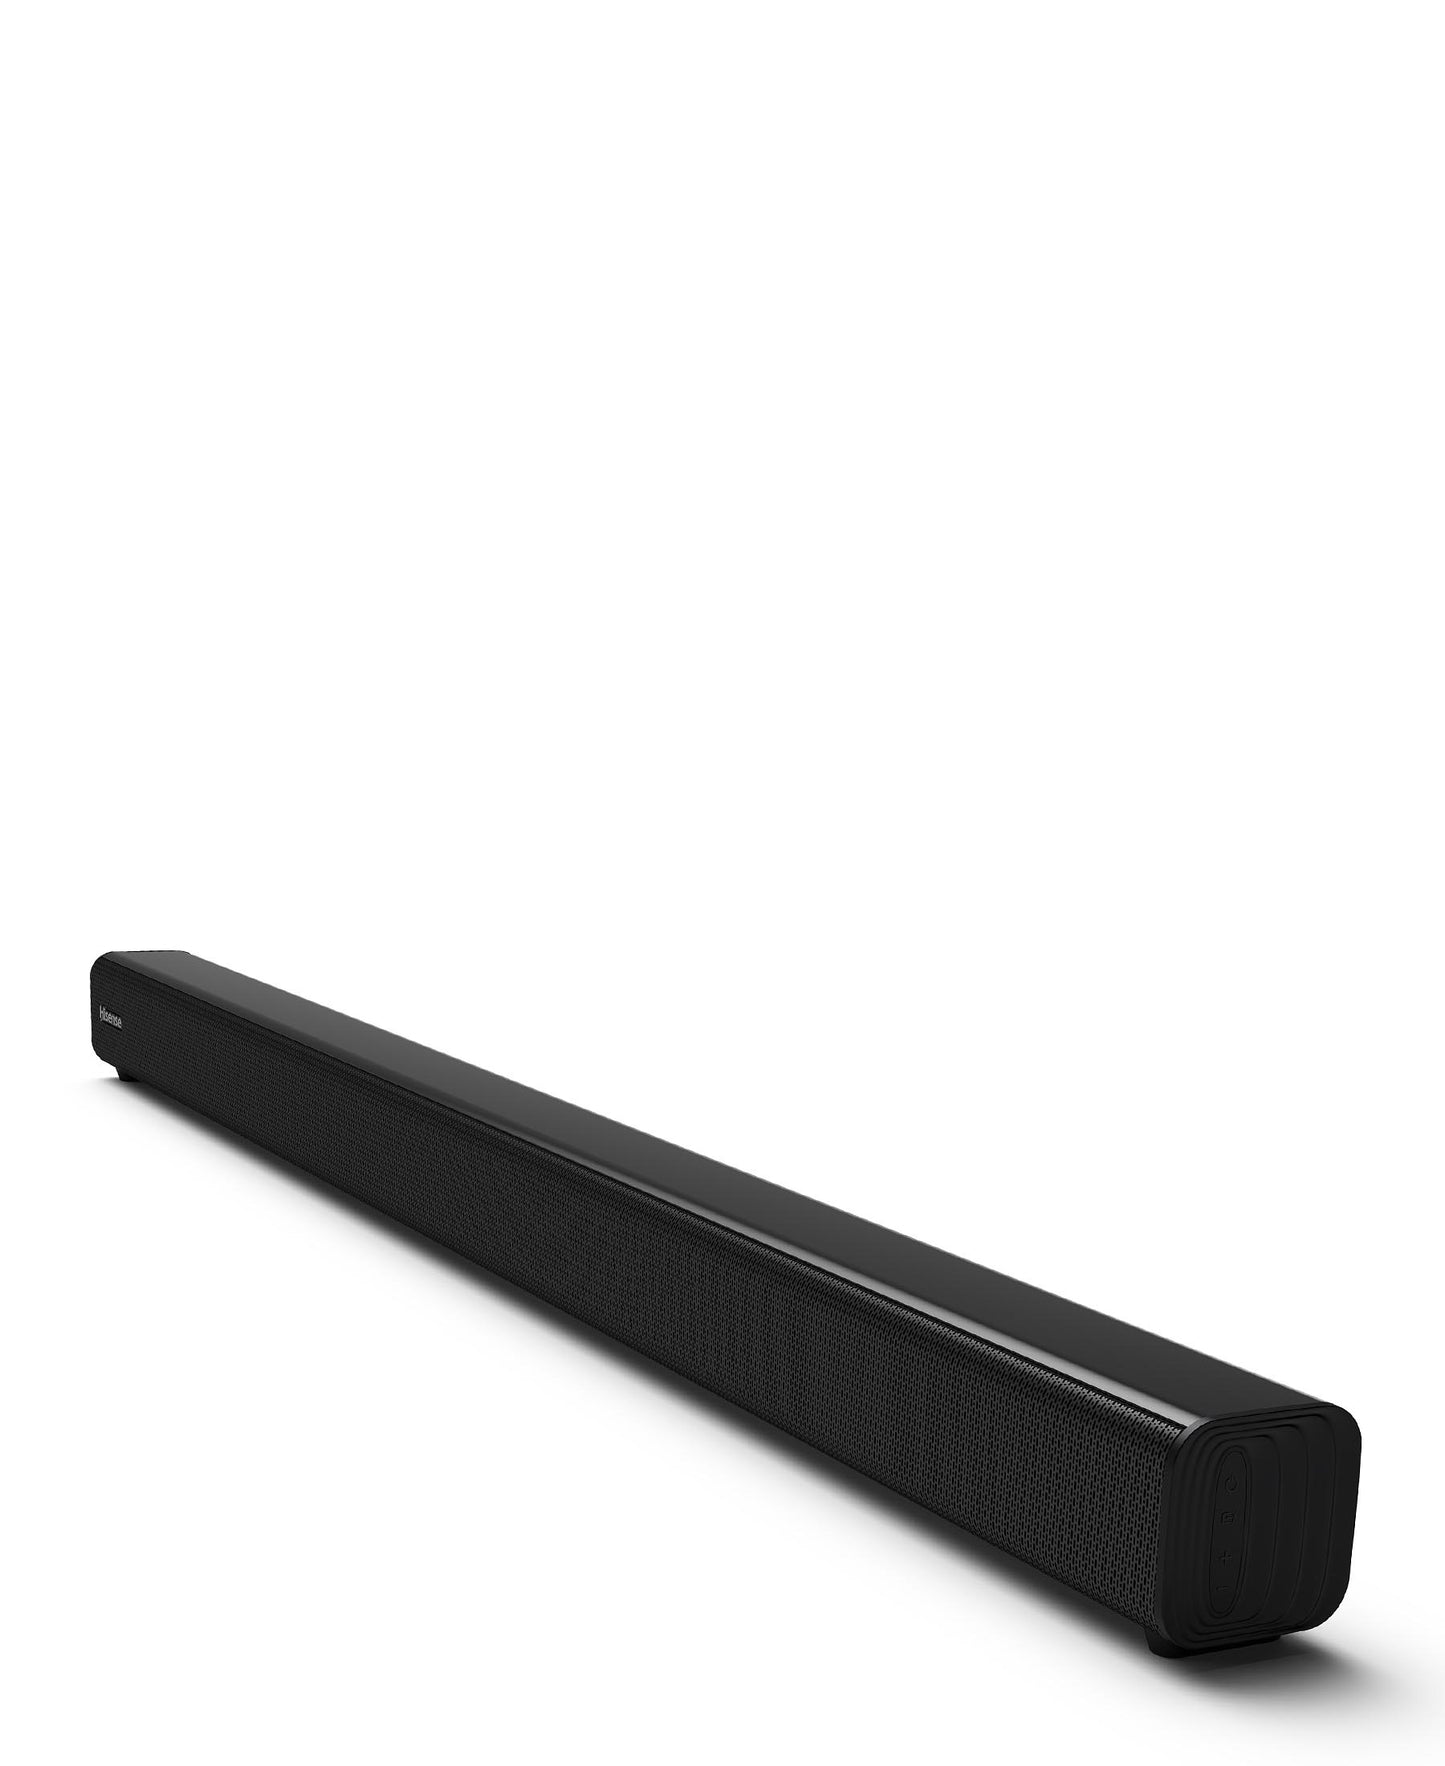 Hisense 2.0 Channel Soundbar - Black